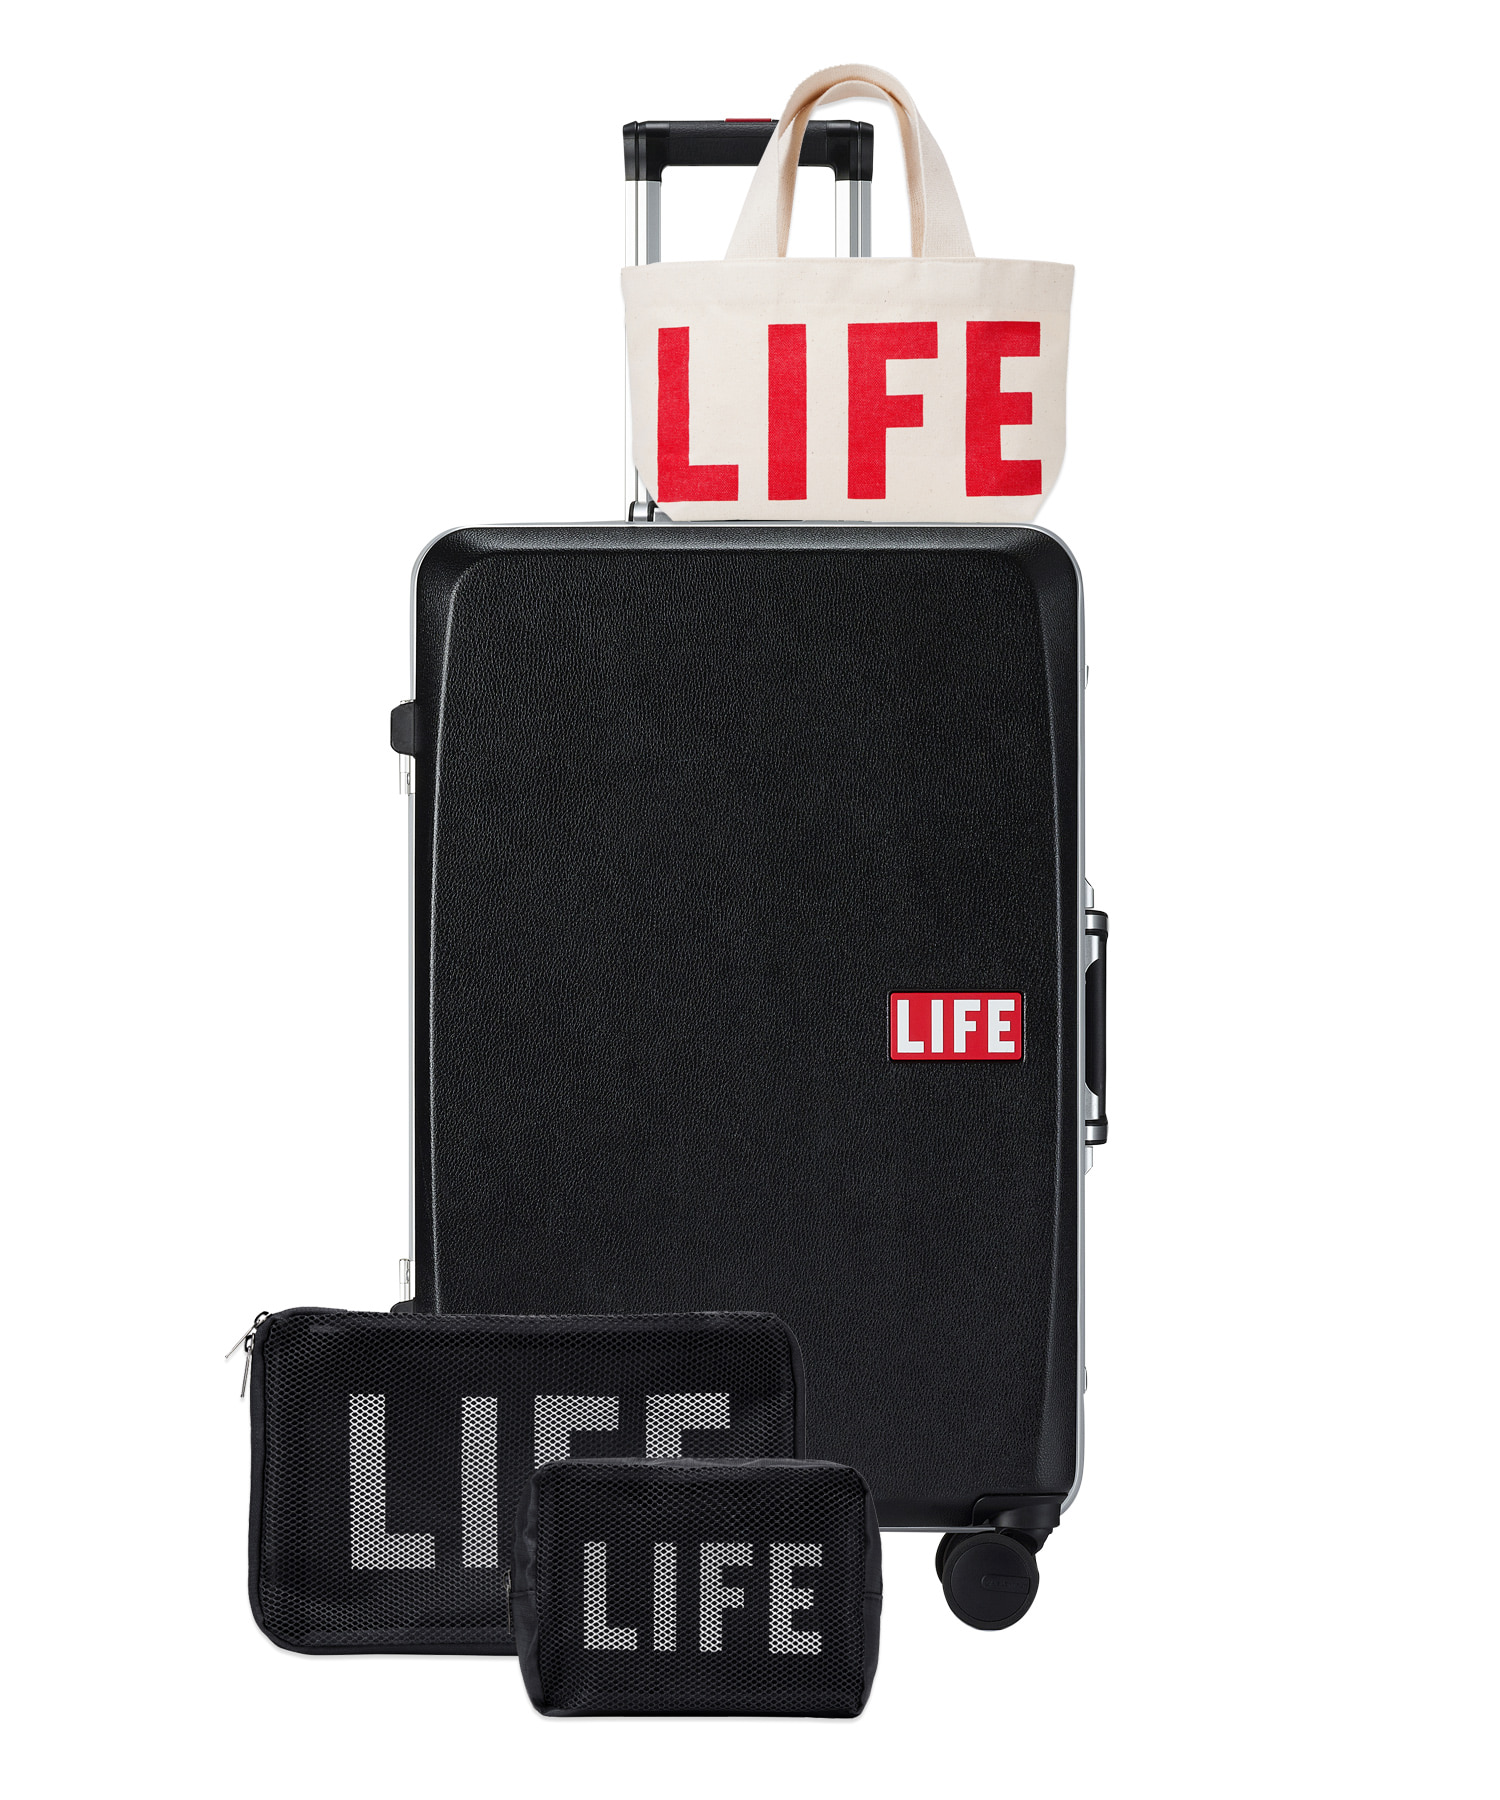 자체브랜드 [회원전용할인] LIFE CLASSIC LUGGAGE 61L_BLACK 라이프,LIFE, LIFE ARCHIVE, 일회용 카메라, 카메라